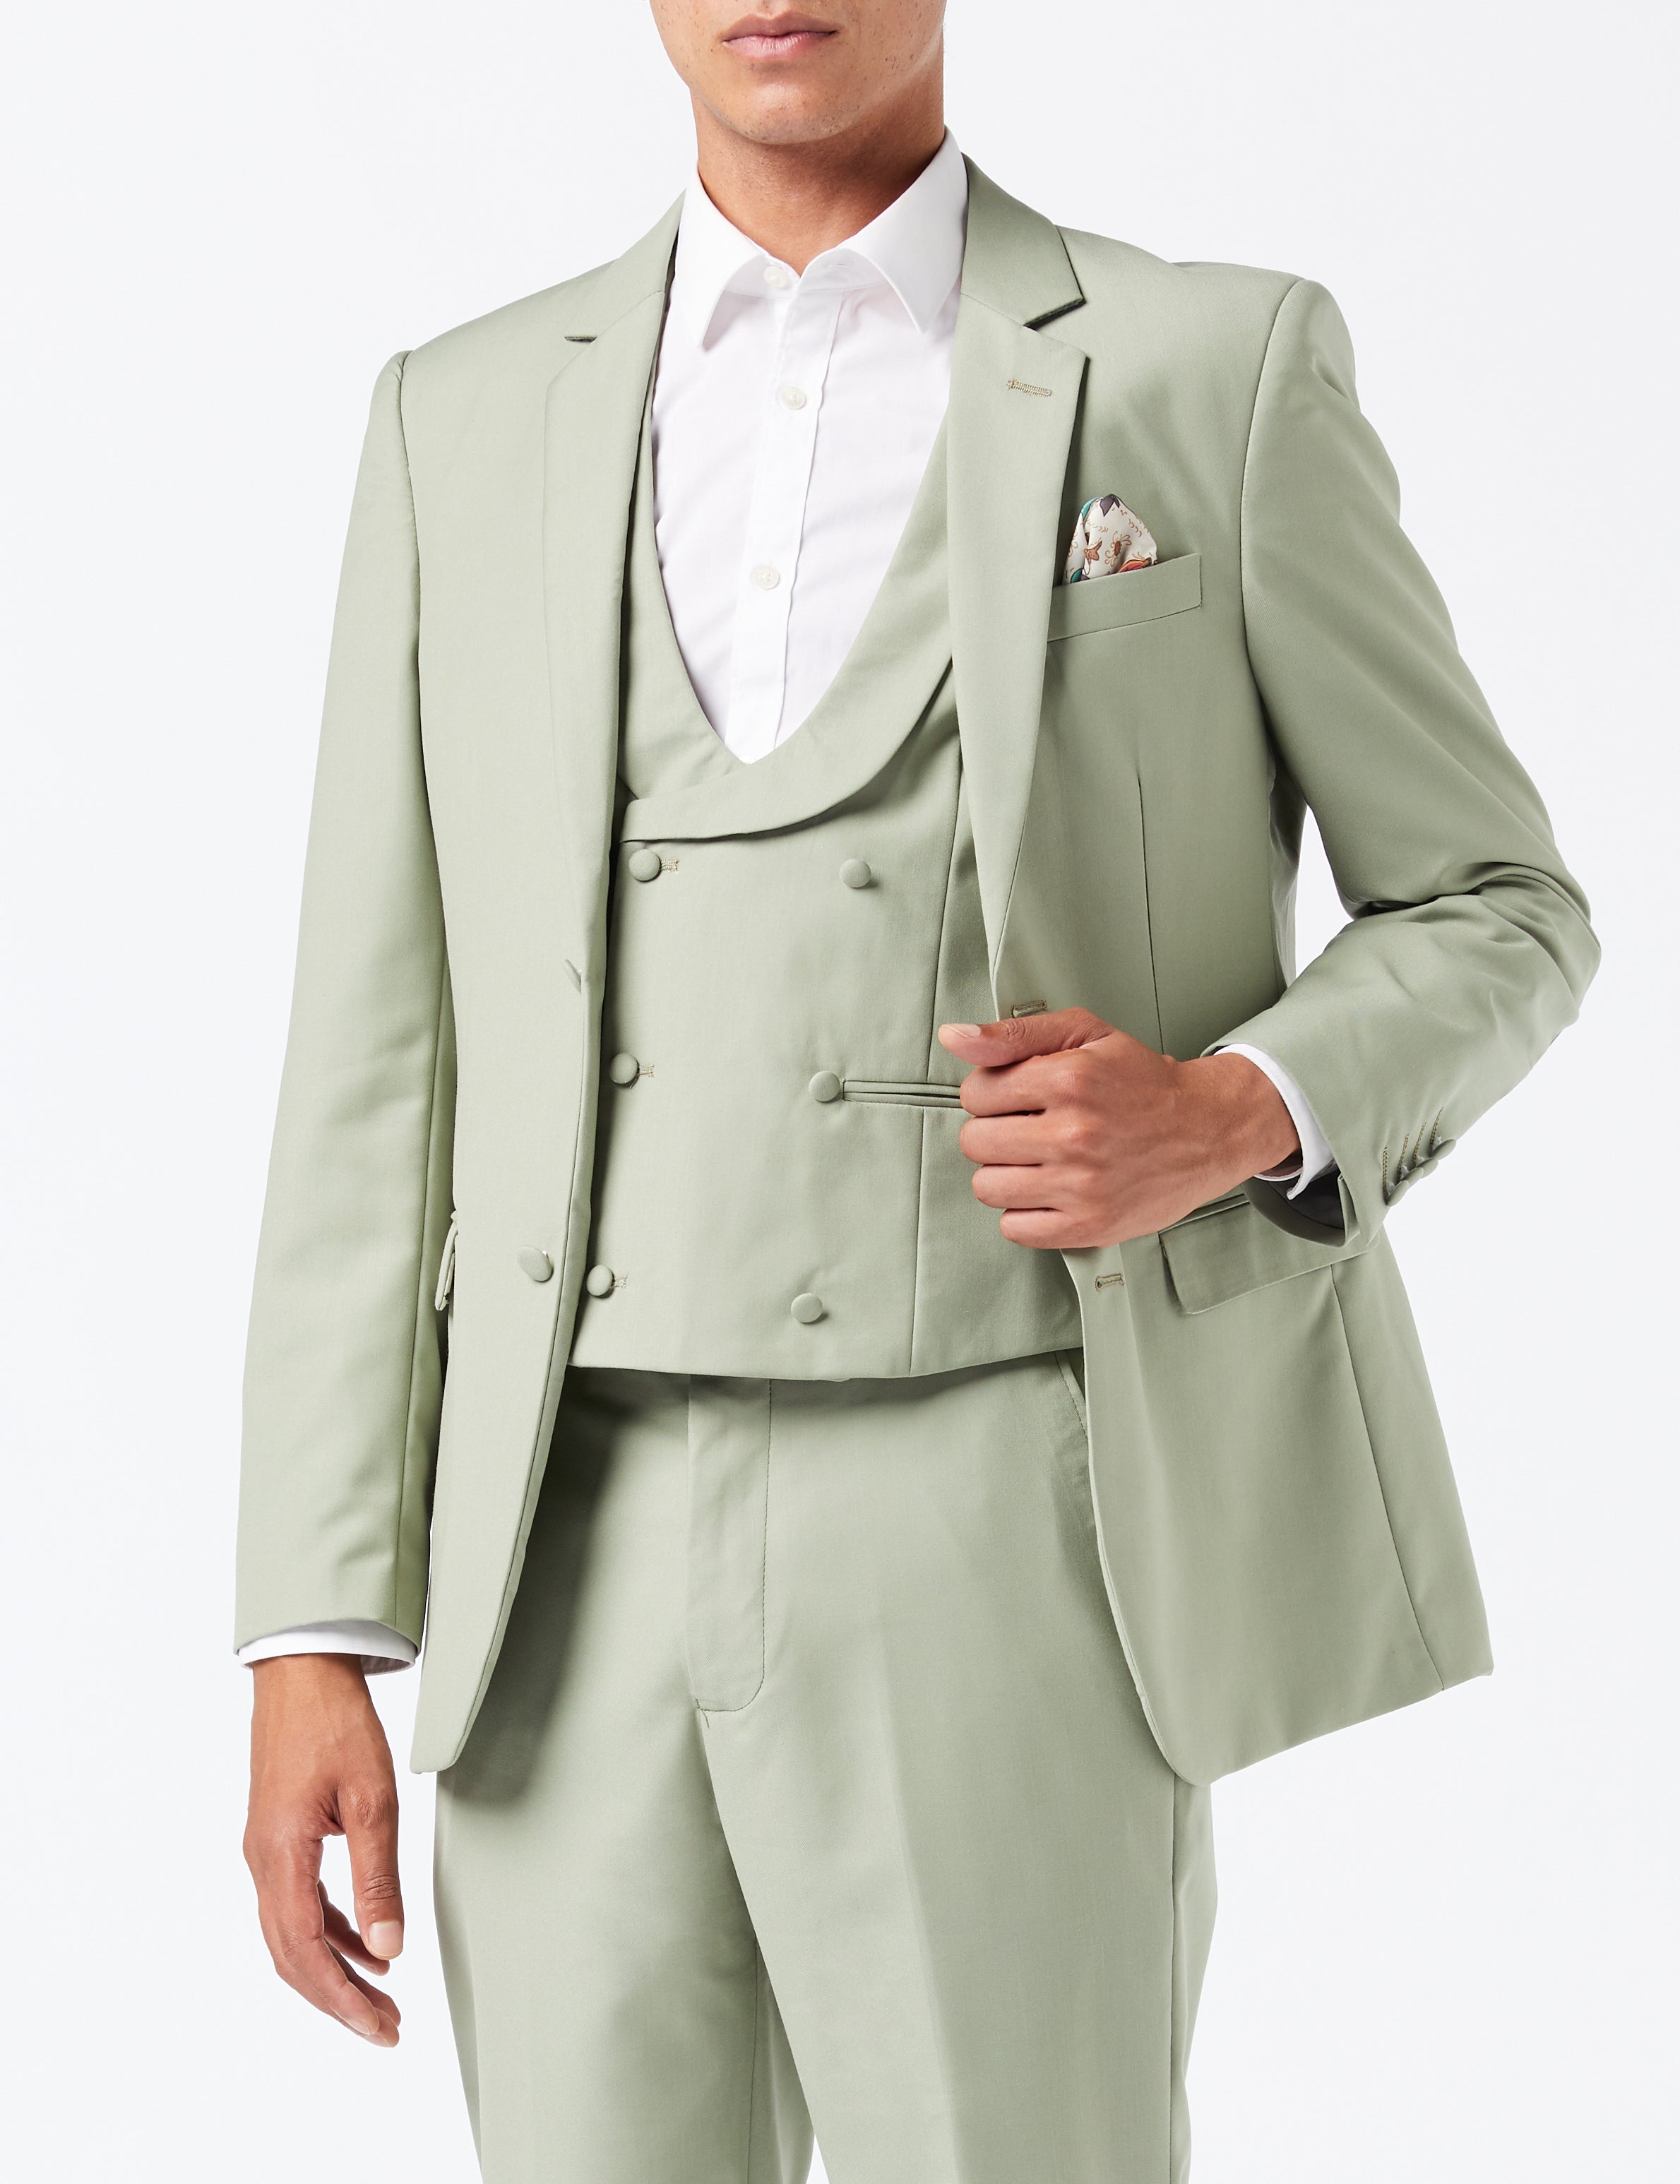 LETE - Pale Mint Green Summer Wedding Suit